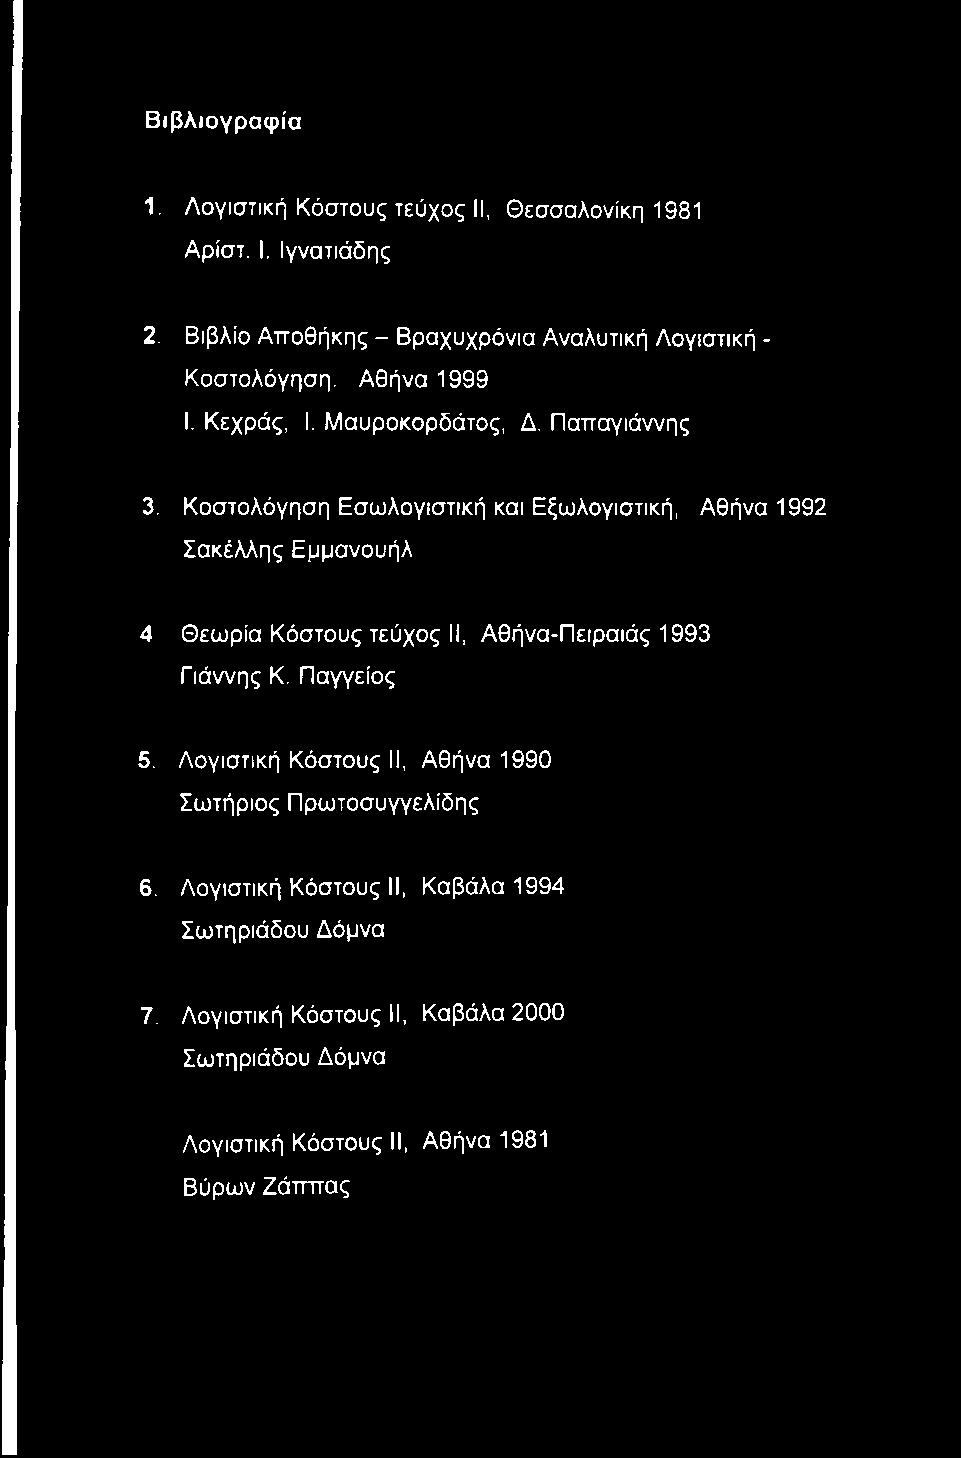 Κοστολόγηση Εσωλογιστική και Εξωλογιστική, Αθήνα 1992 Σακέλλης Εμμανουήλ 4 Θεωρία Κόστους τεύχος II, Αθήνα-Πειραιάς 1993 Γιάννης Κ.